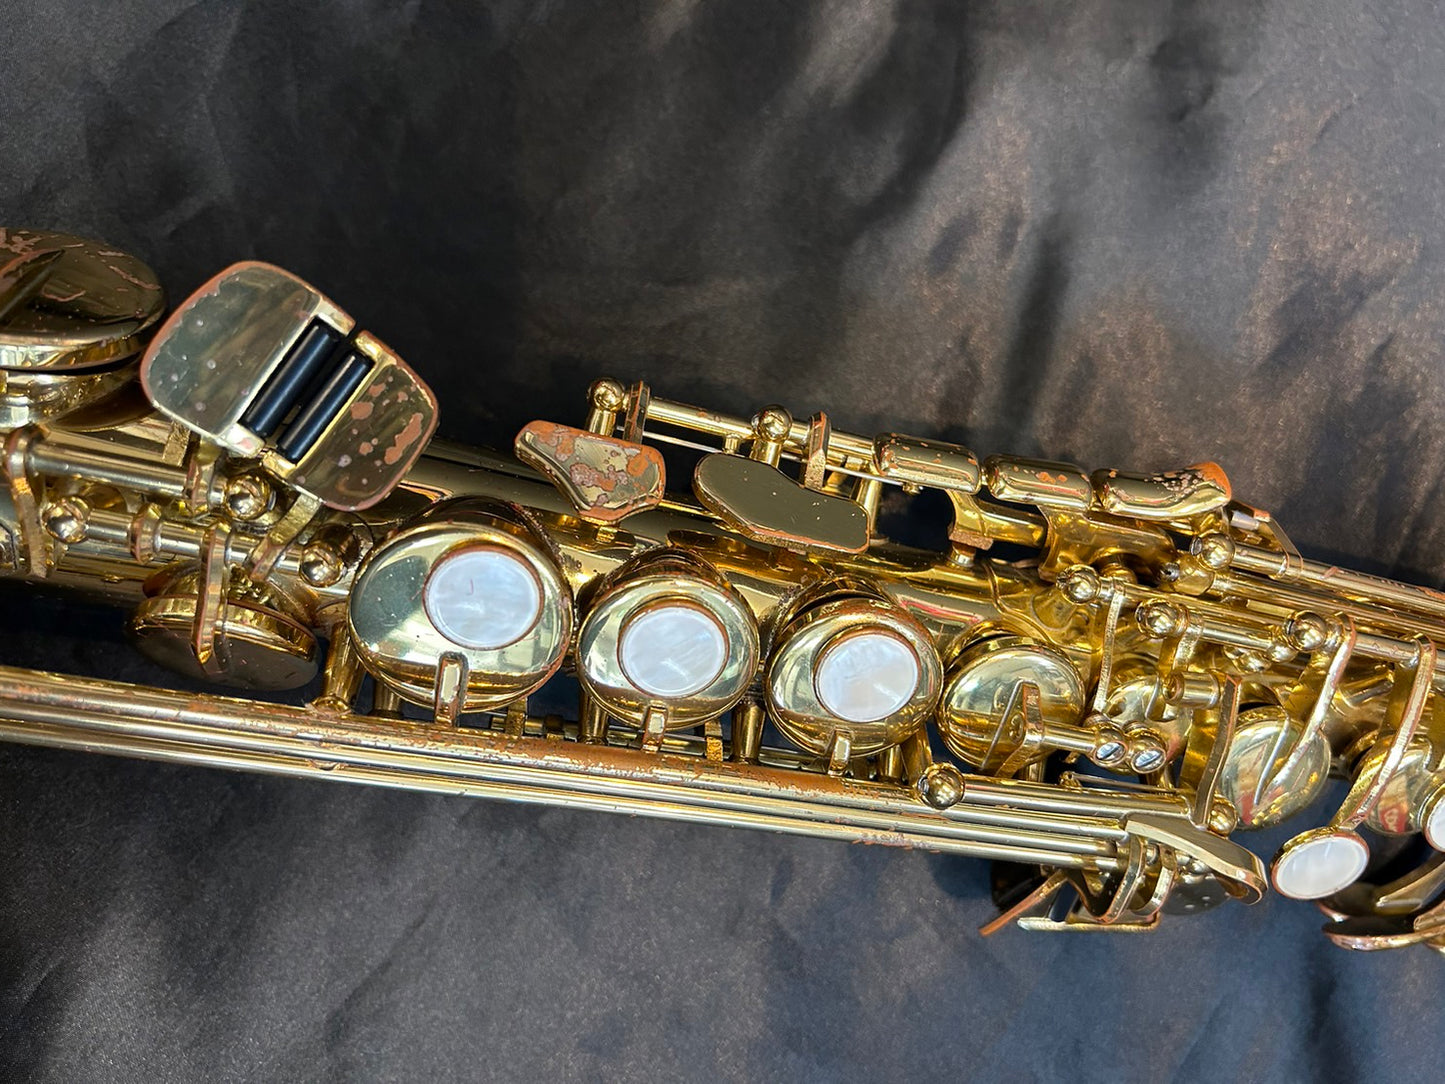 レンタル楽器 ヤマハ ソプラノサックス YSS-475　特価品